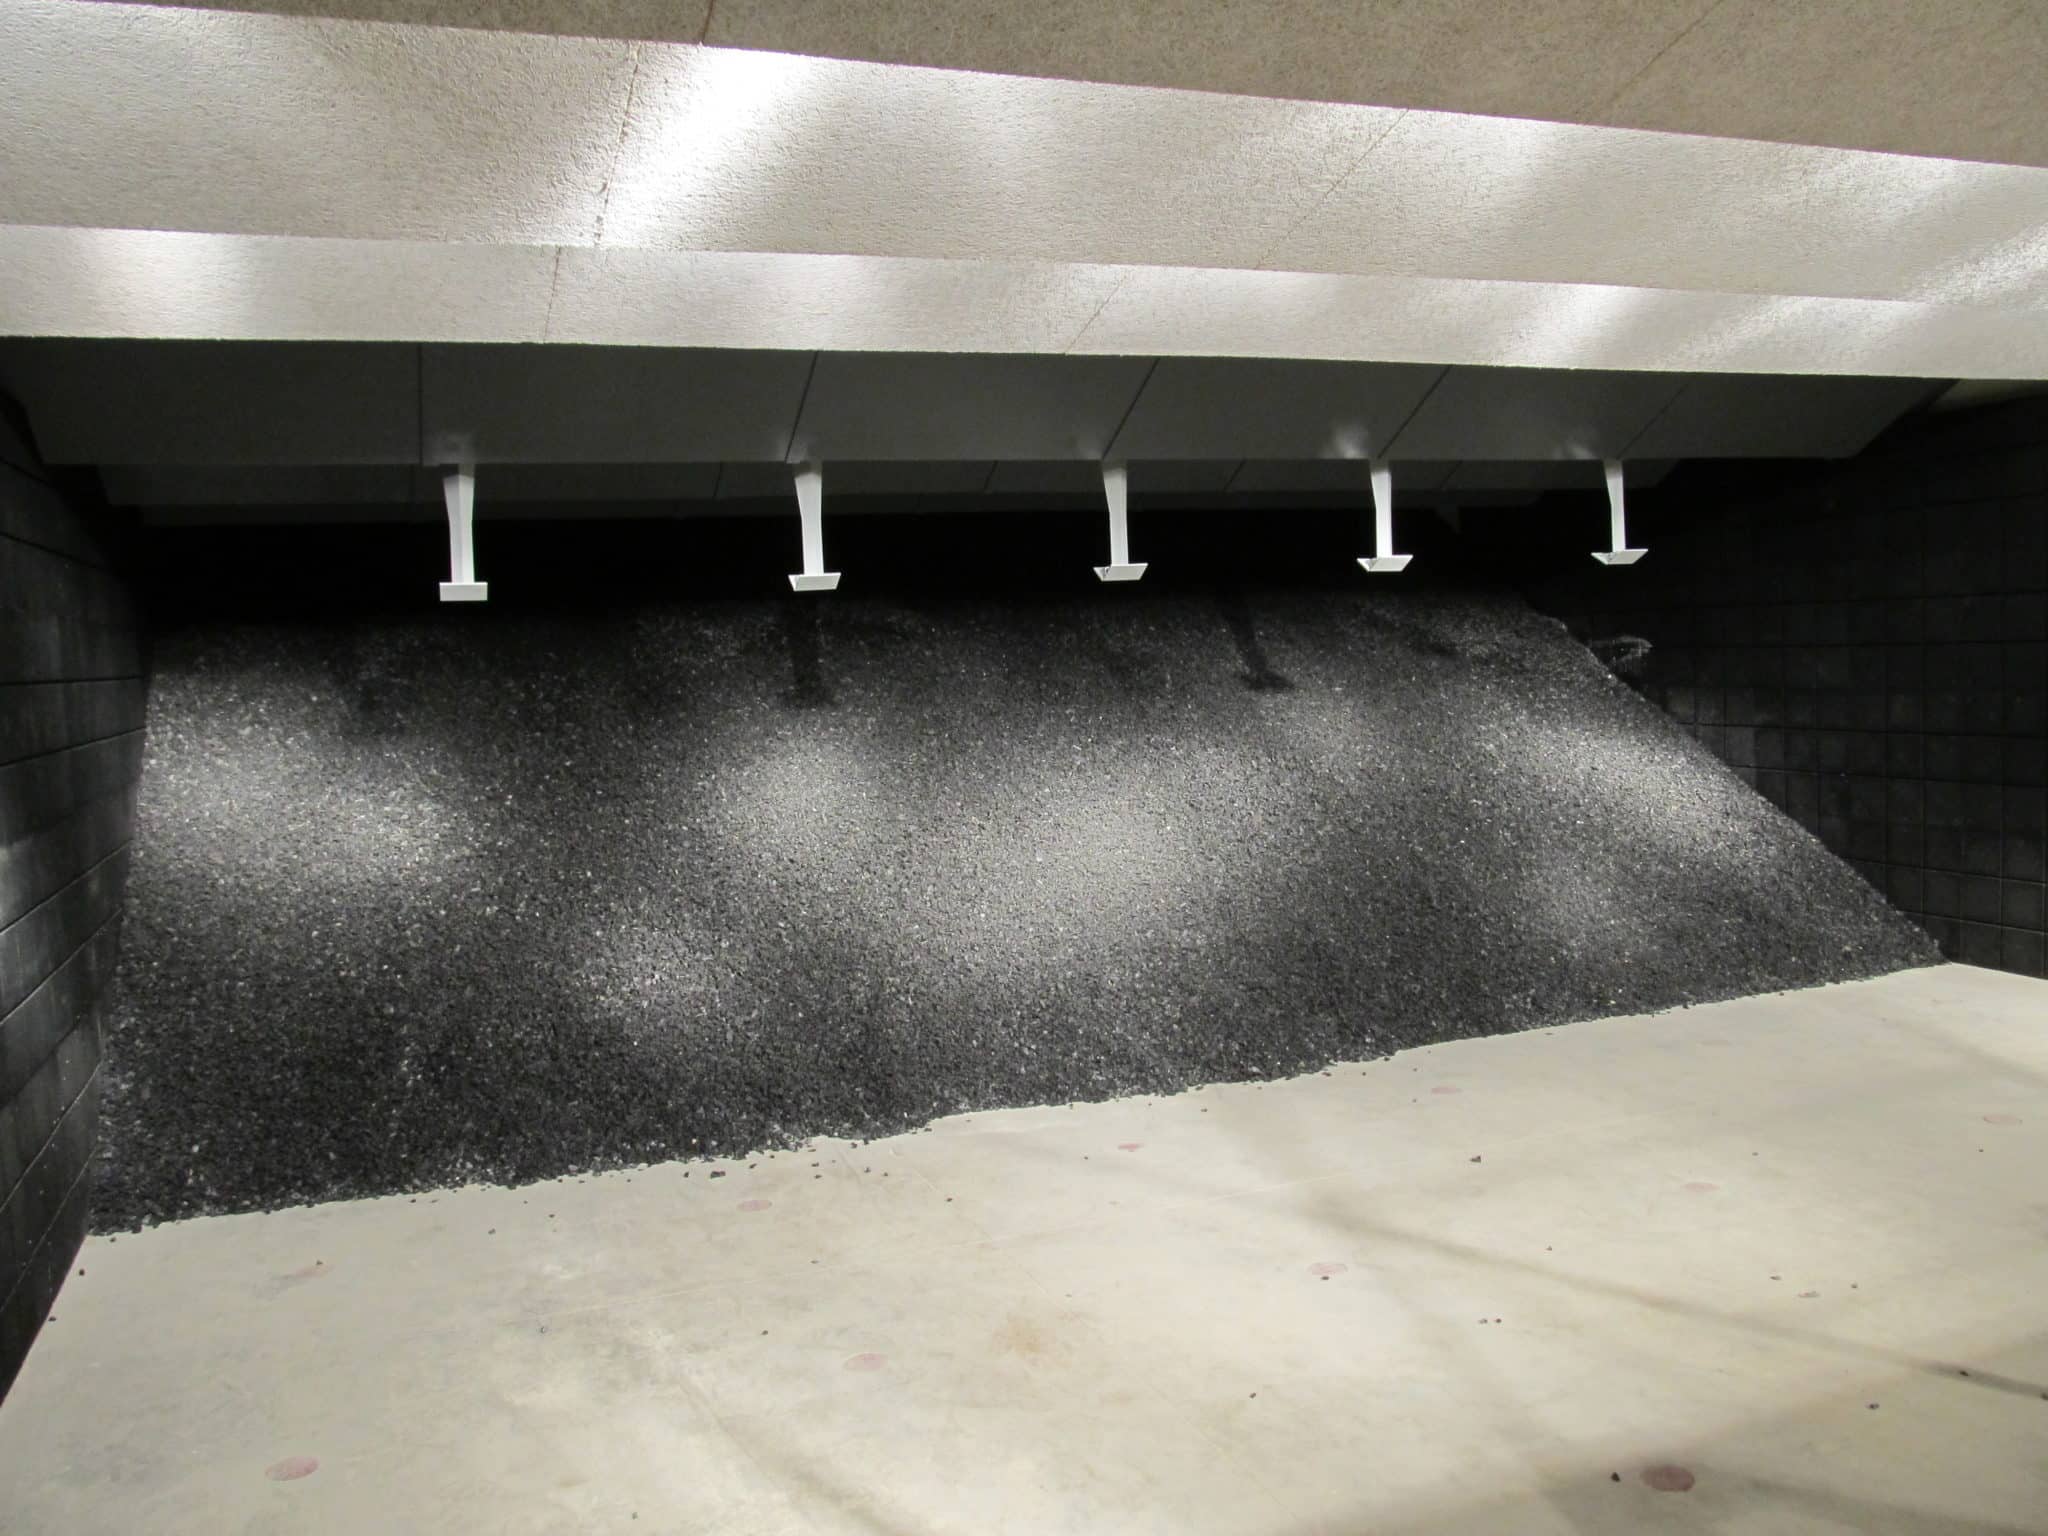 How Indoor Shooting Ranges Stop Bullets